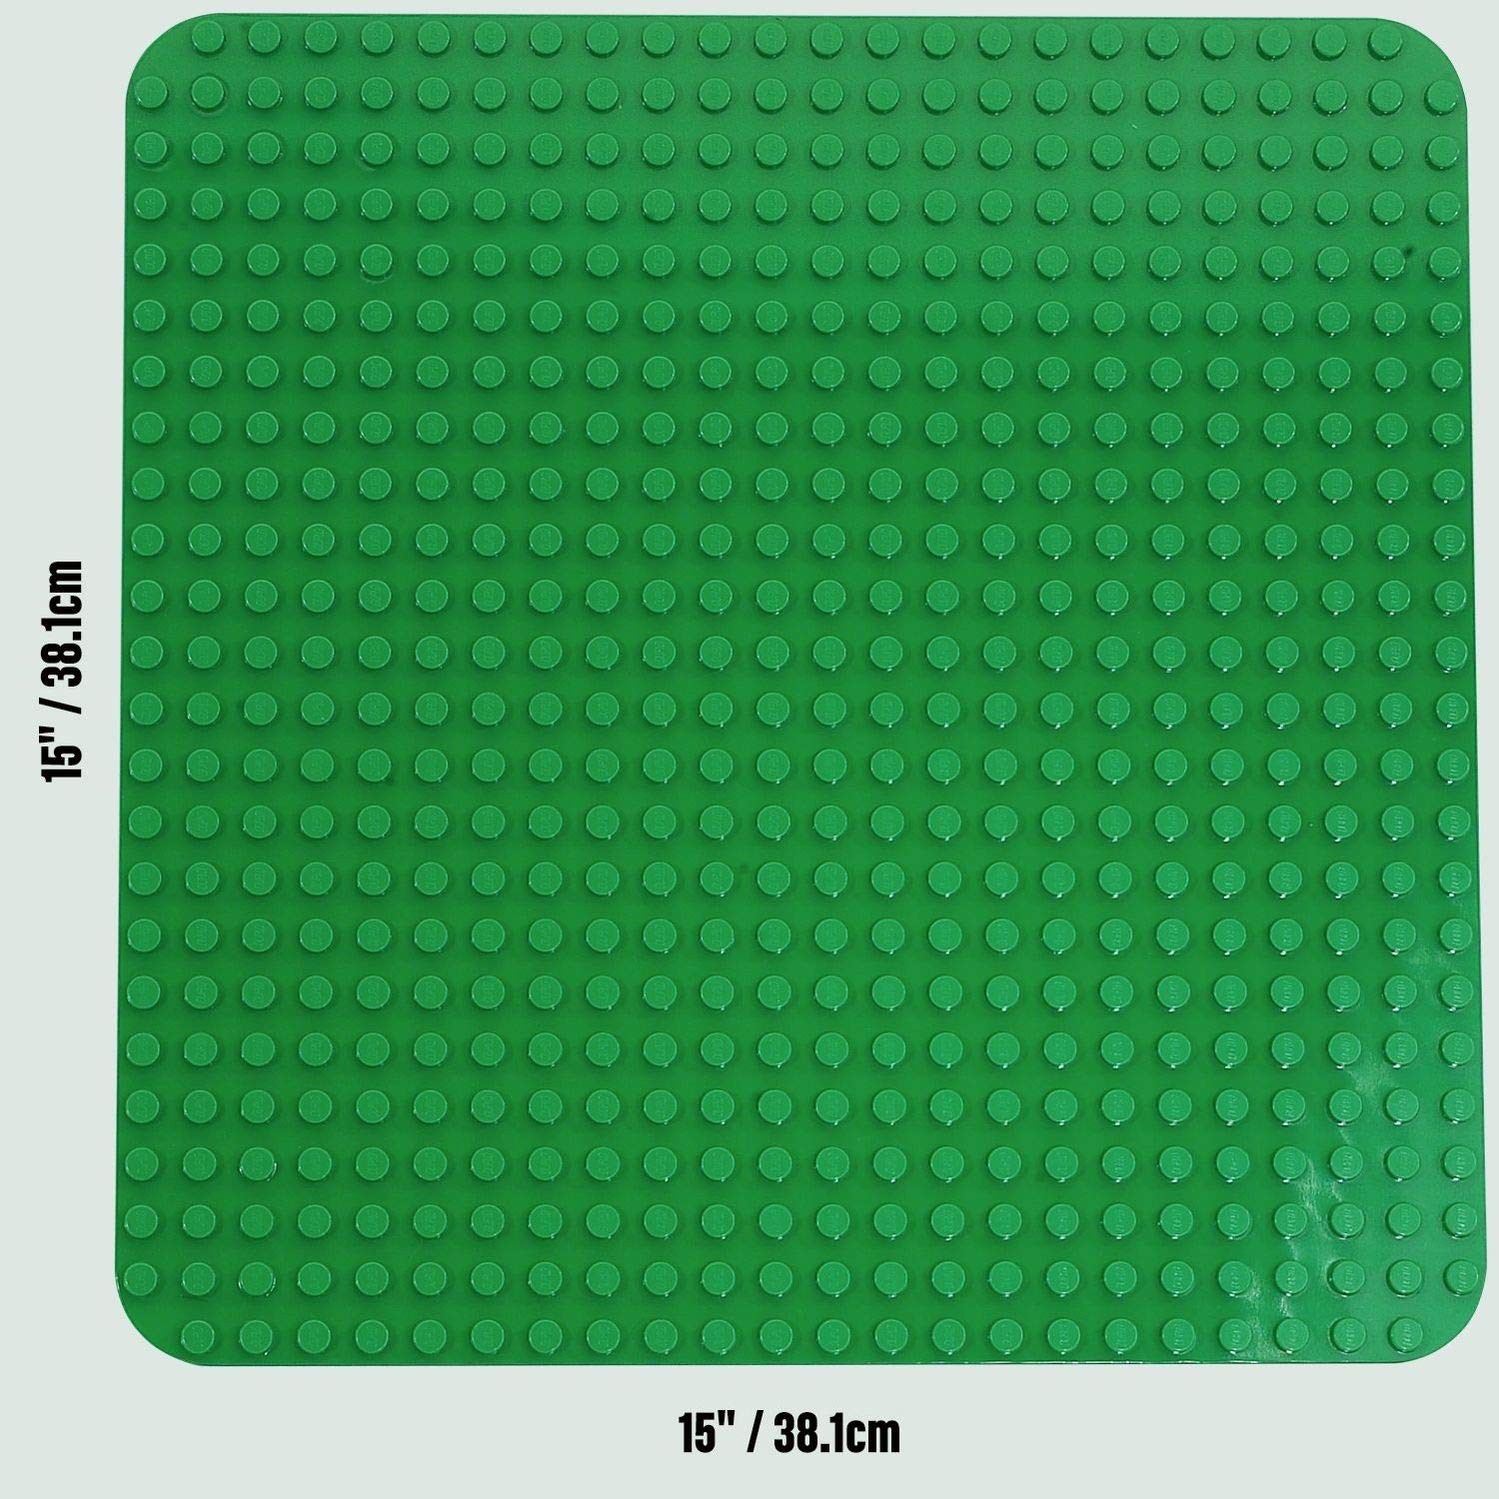 LEGO Duplo 2304 - Große Bauplatte, grün